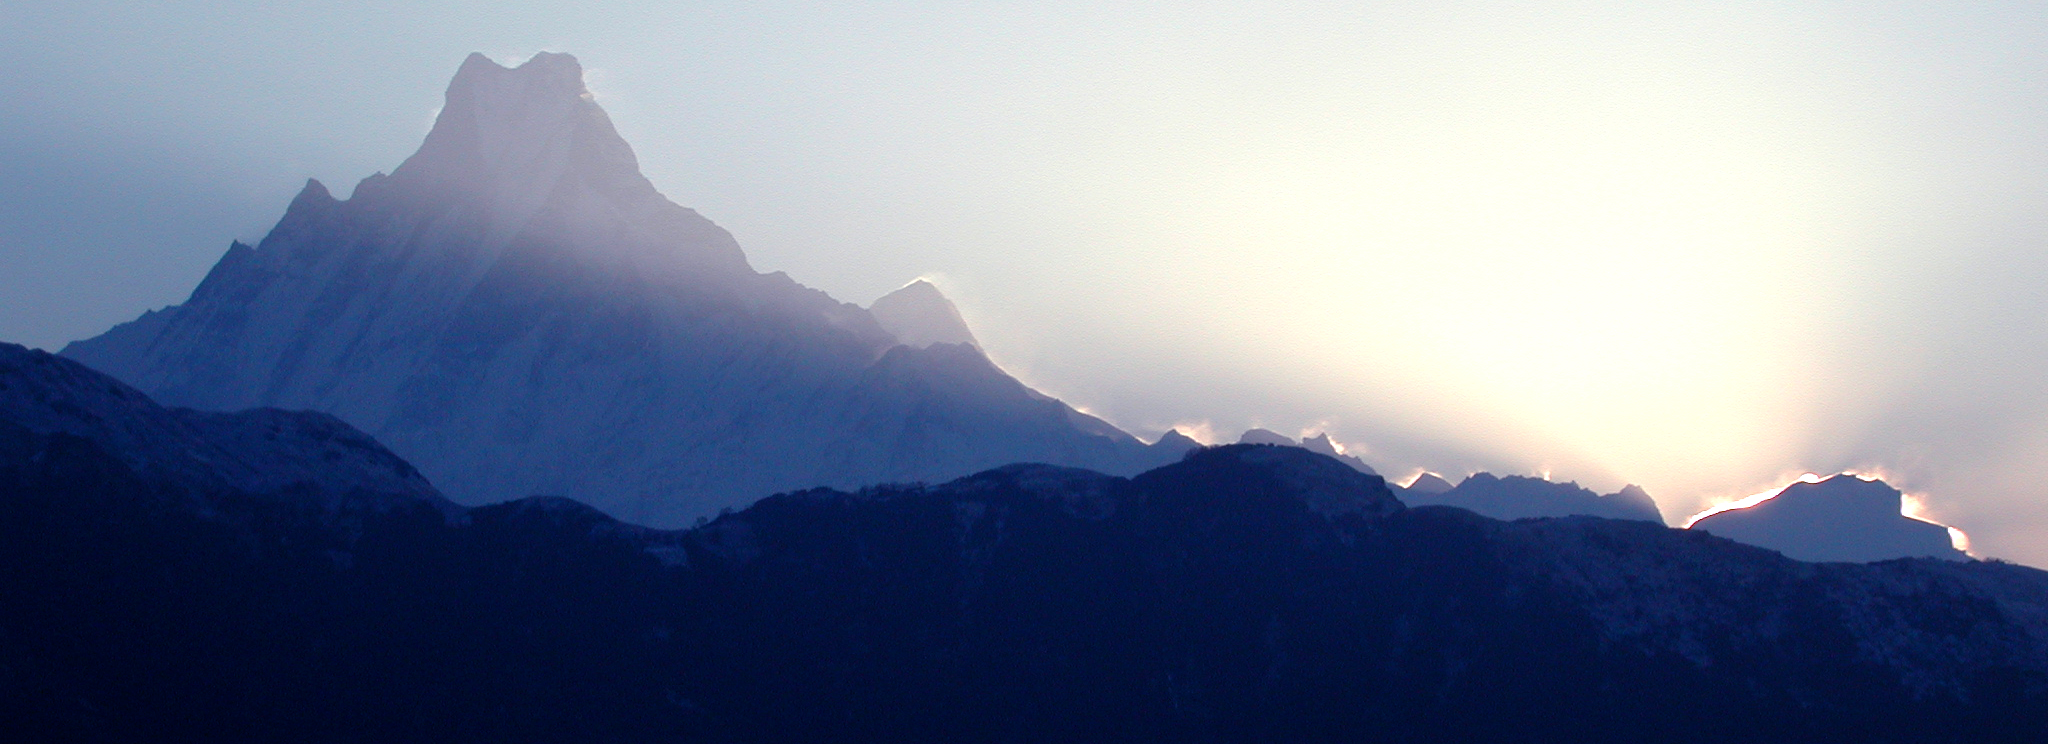 Himalayas at Dawn